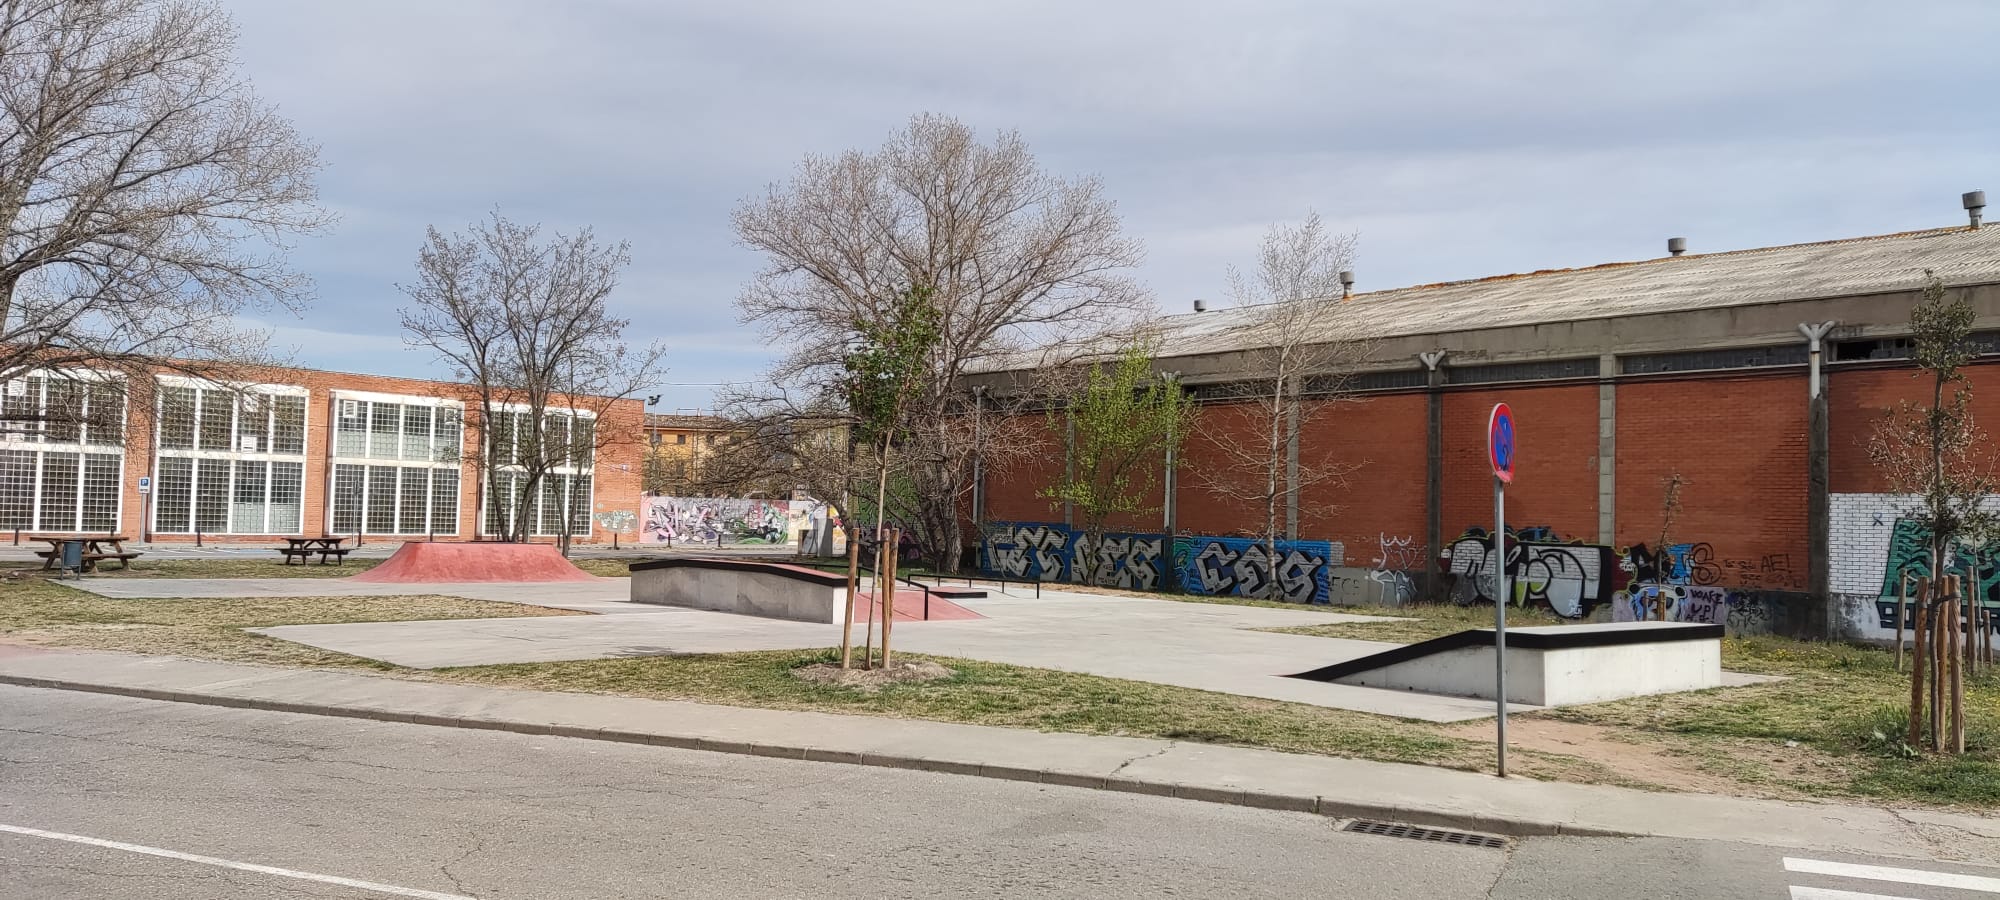   Imatge de l'skatepark, situat davant de l'Institut Miquel Martí i Pol.